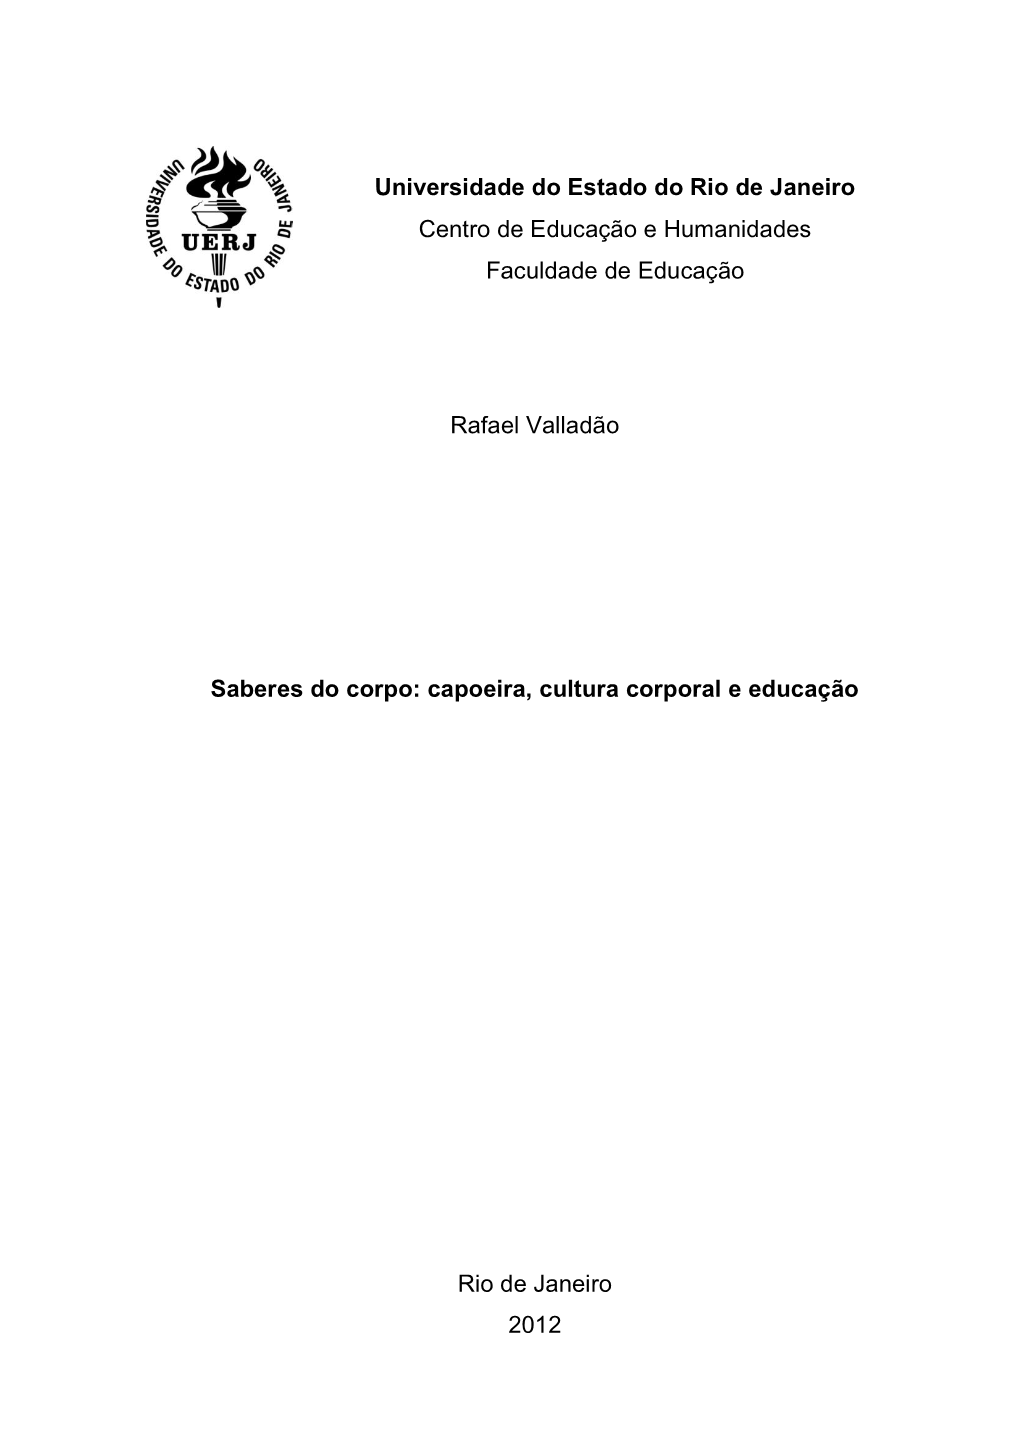 Dissert Rafael Valladao.Pdf